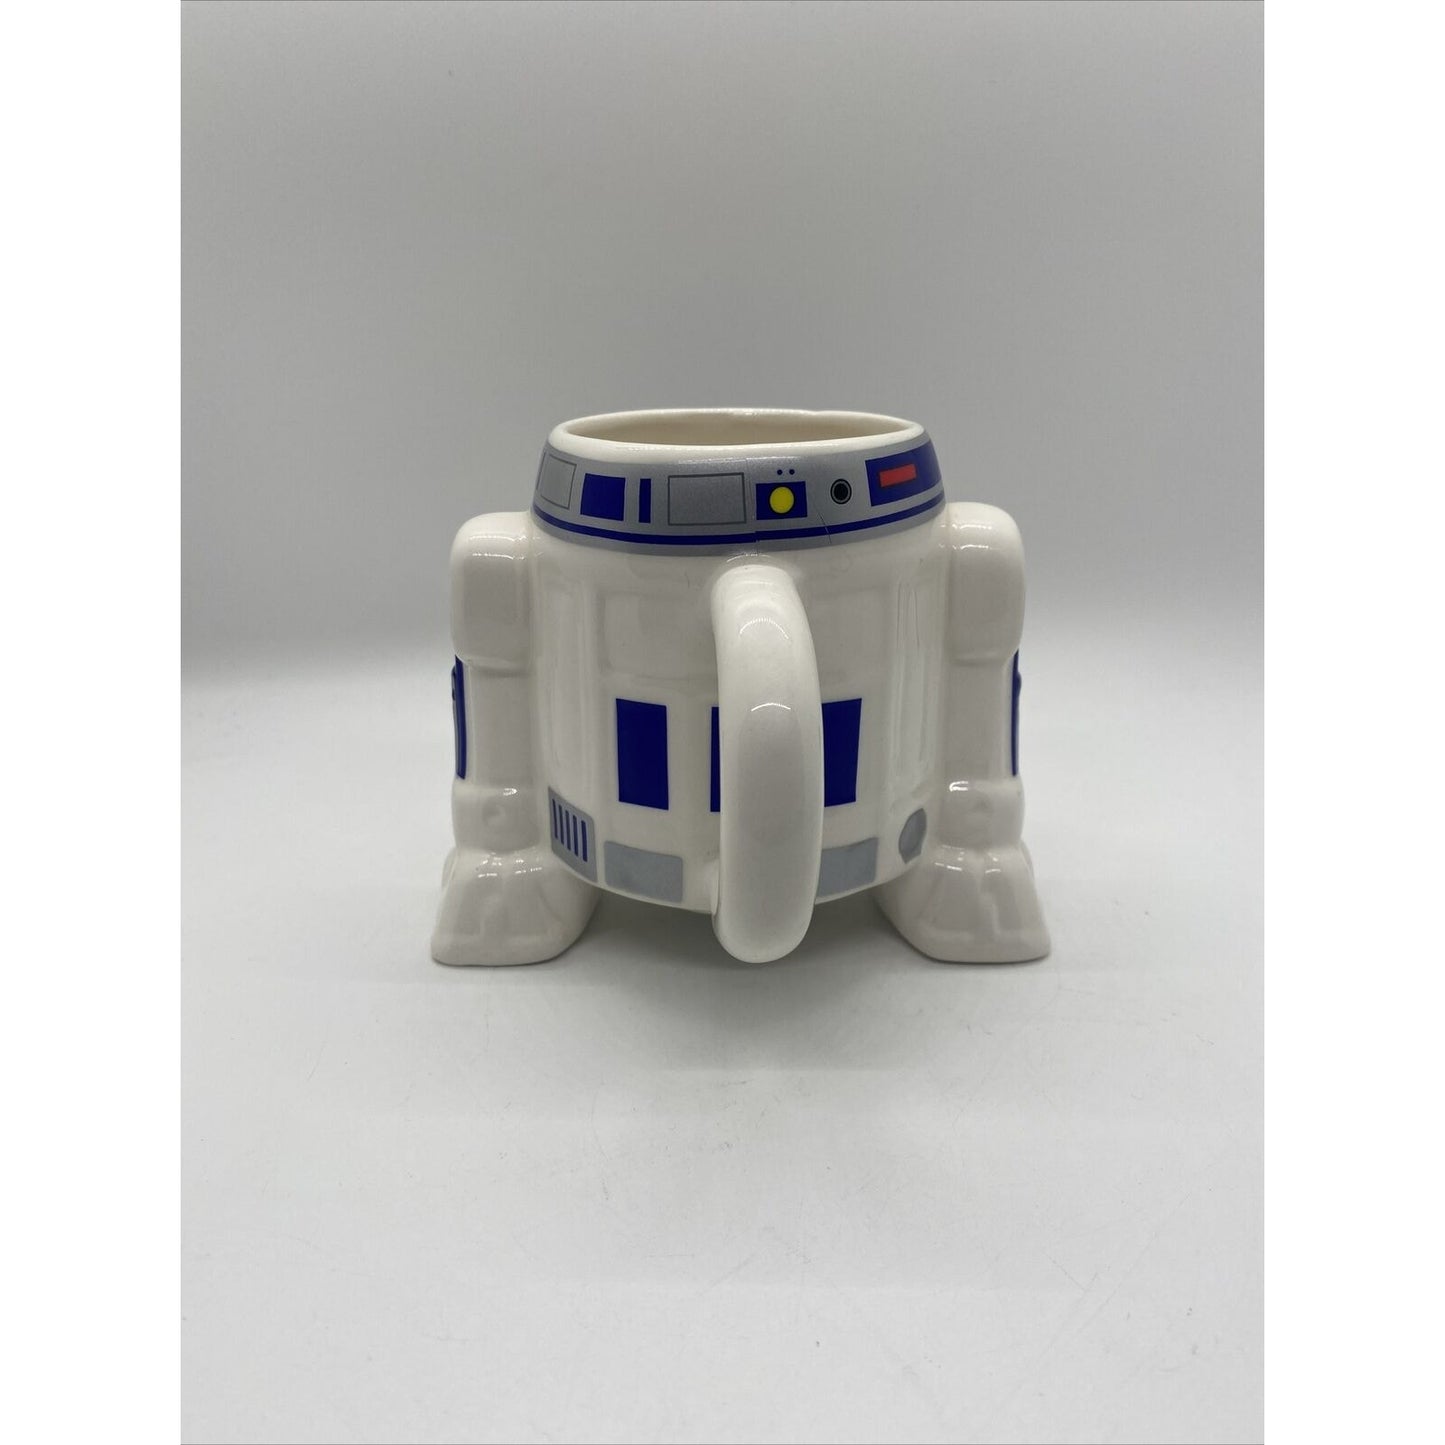 Collectible Star Wars R2D2 Ceramic Mug 4.1" Tall L@@K!